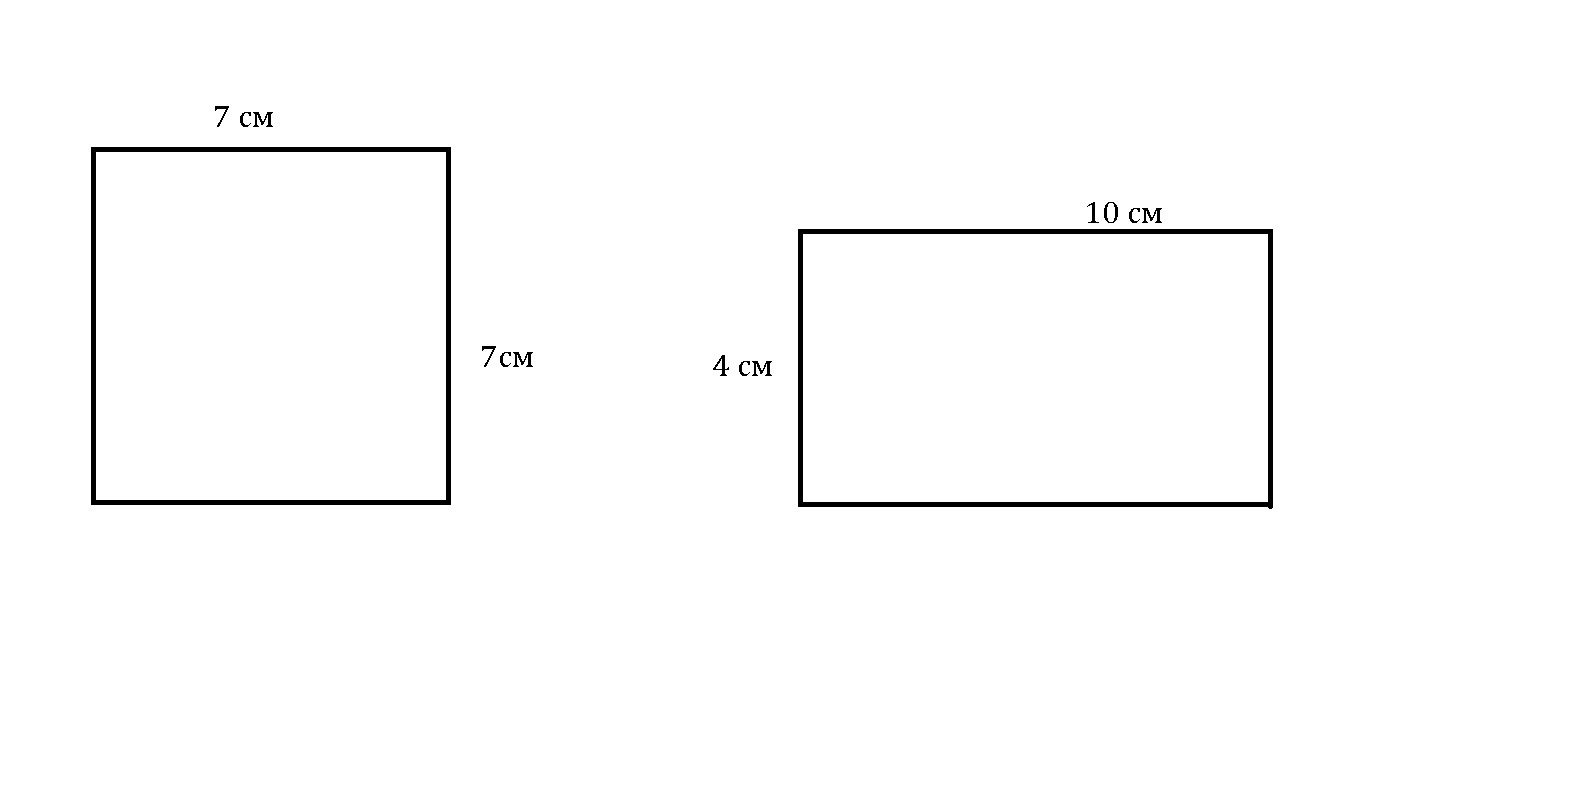 Начертить прямоугольник со стороной 7 см. Прямоугольник с площадью 28 см2. Начерти прямоугольник с площадью 28 см2. Начертить прямоугольник с площадью 28 см2. Сантиметр в квадрате.